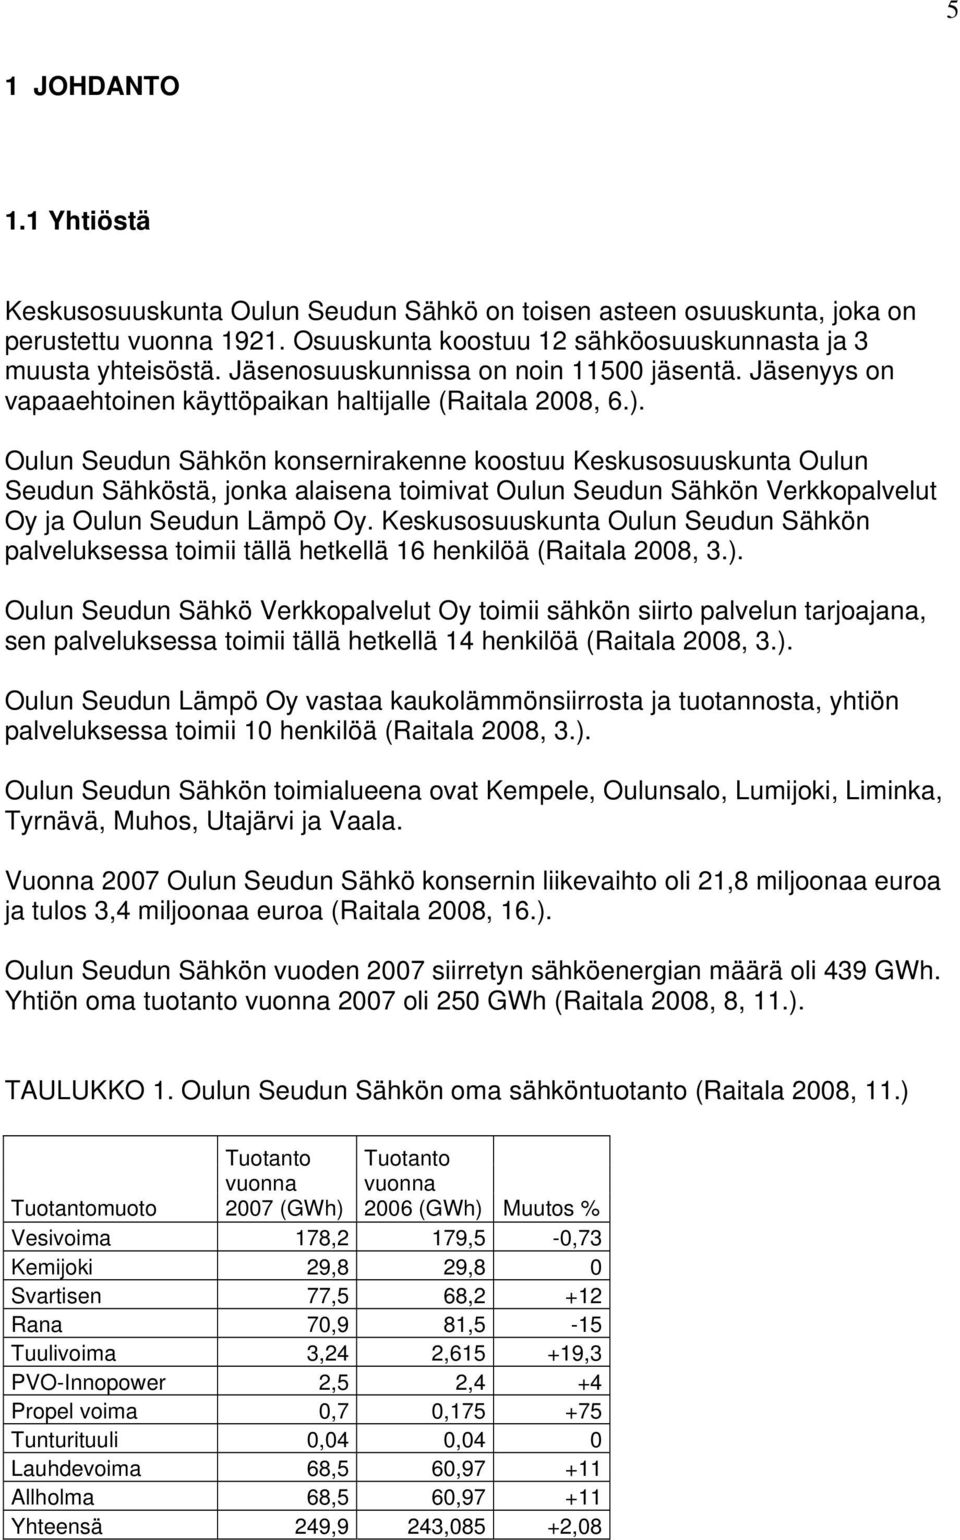 Oulun Seudun Sähkön konsernirakenne koostuu Keskusosuuskunta Oulun Seudun Sähköstä, jonka alaisena toimivat Oulun Seudun Sähkön Verkkopalvelut Oy ja Oulun Seudun Lämpö Oy.